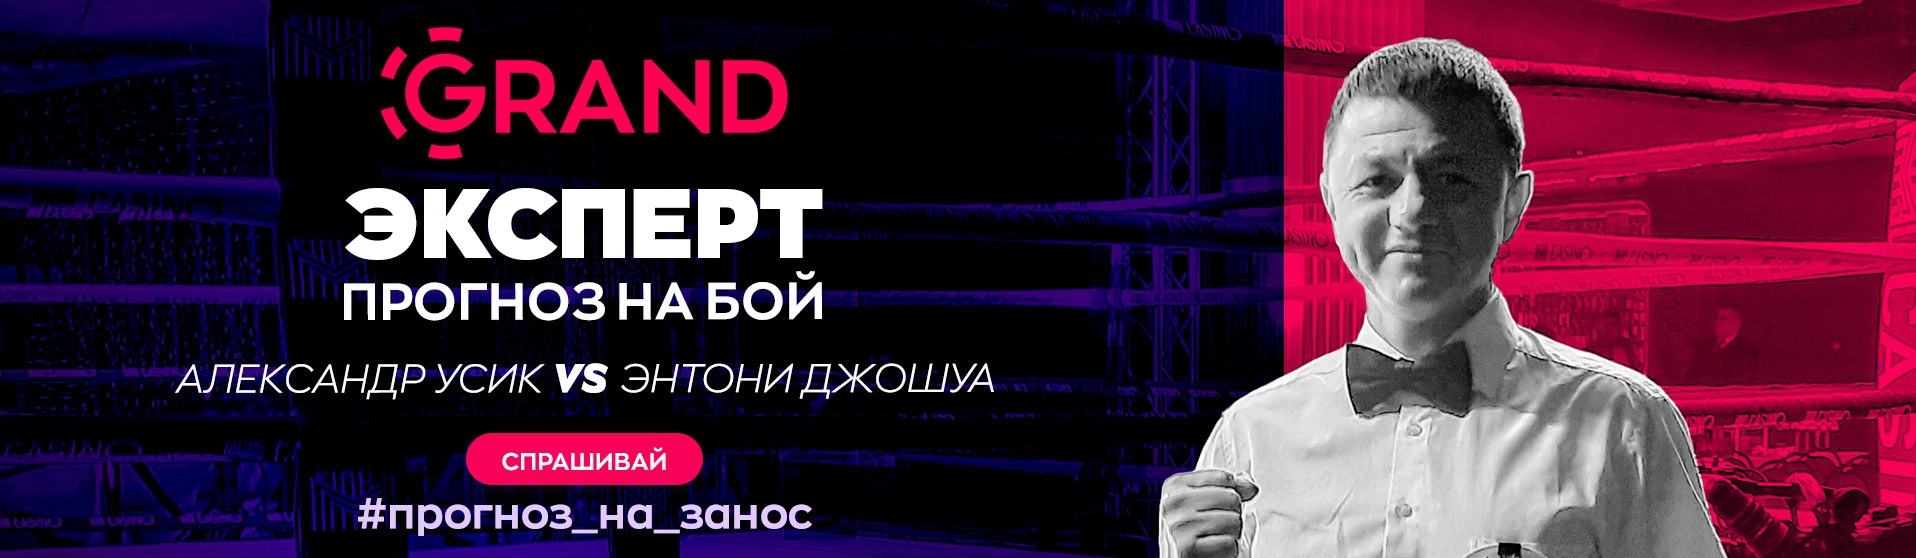 #прогноз_на_занос: бой-реванш украинца Александра Усика и британца Энтони Джошуа